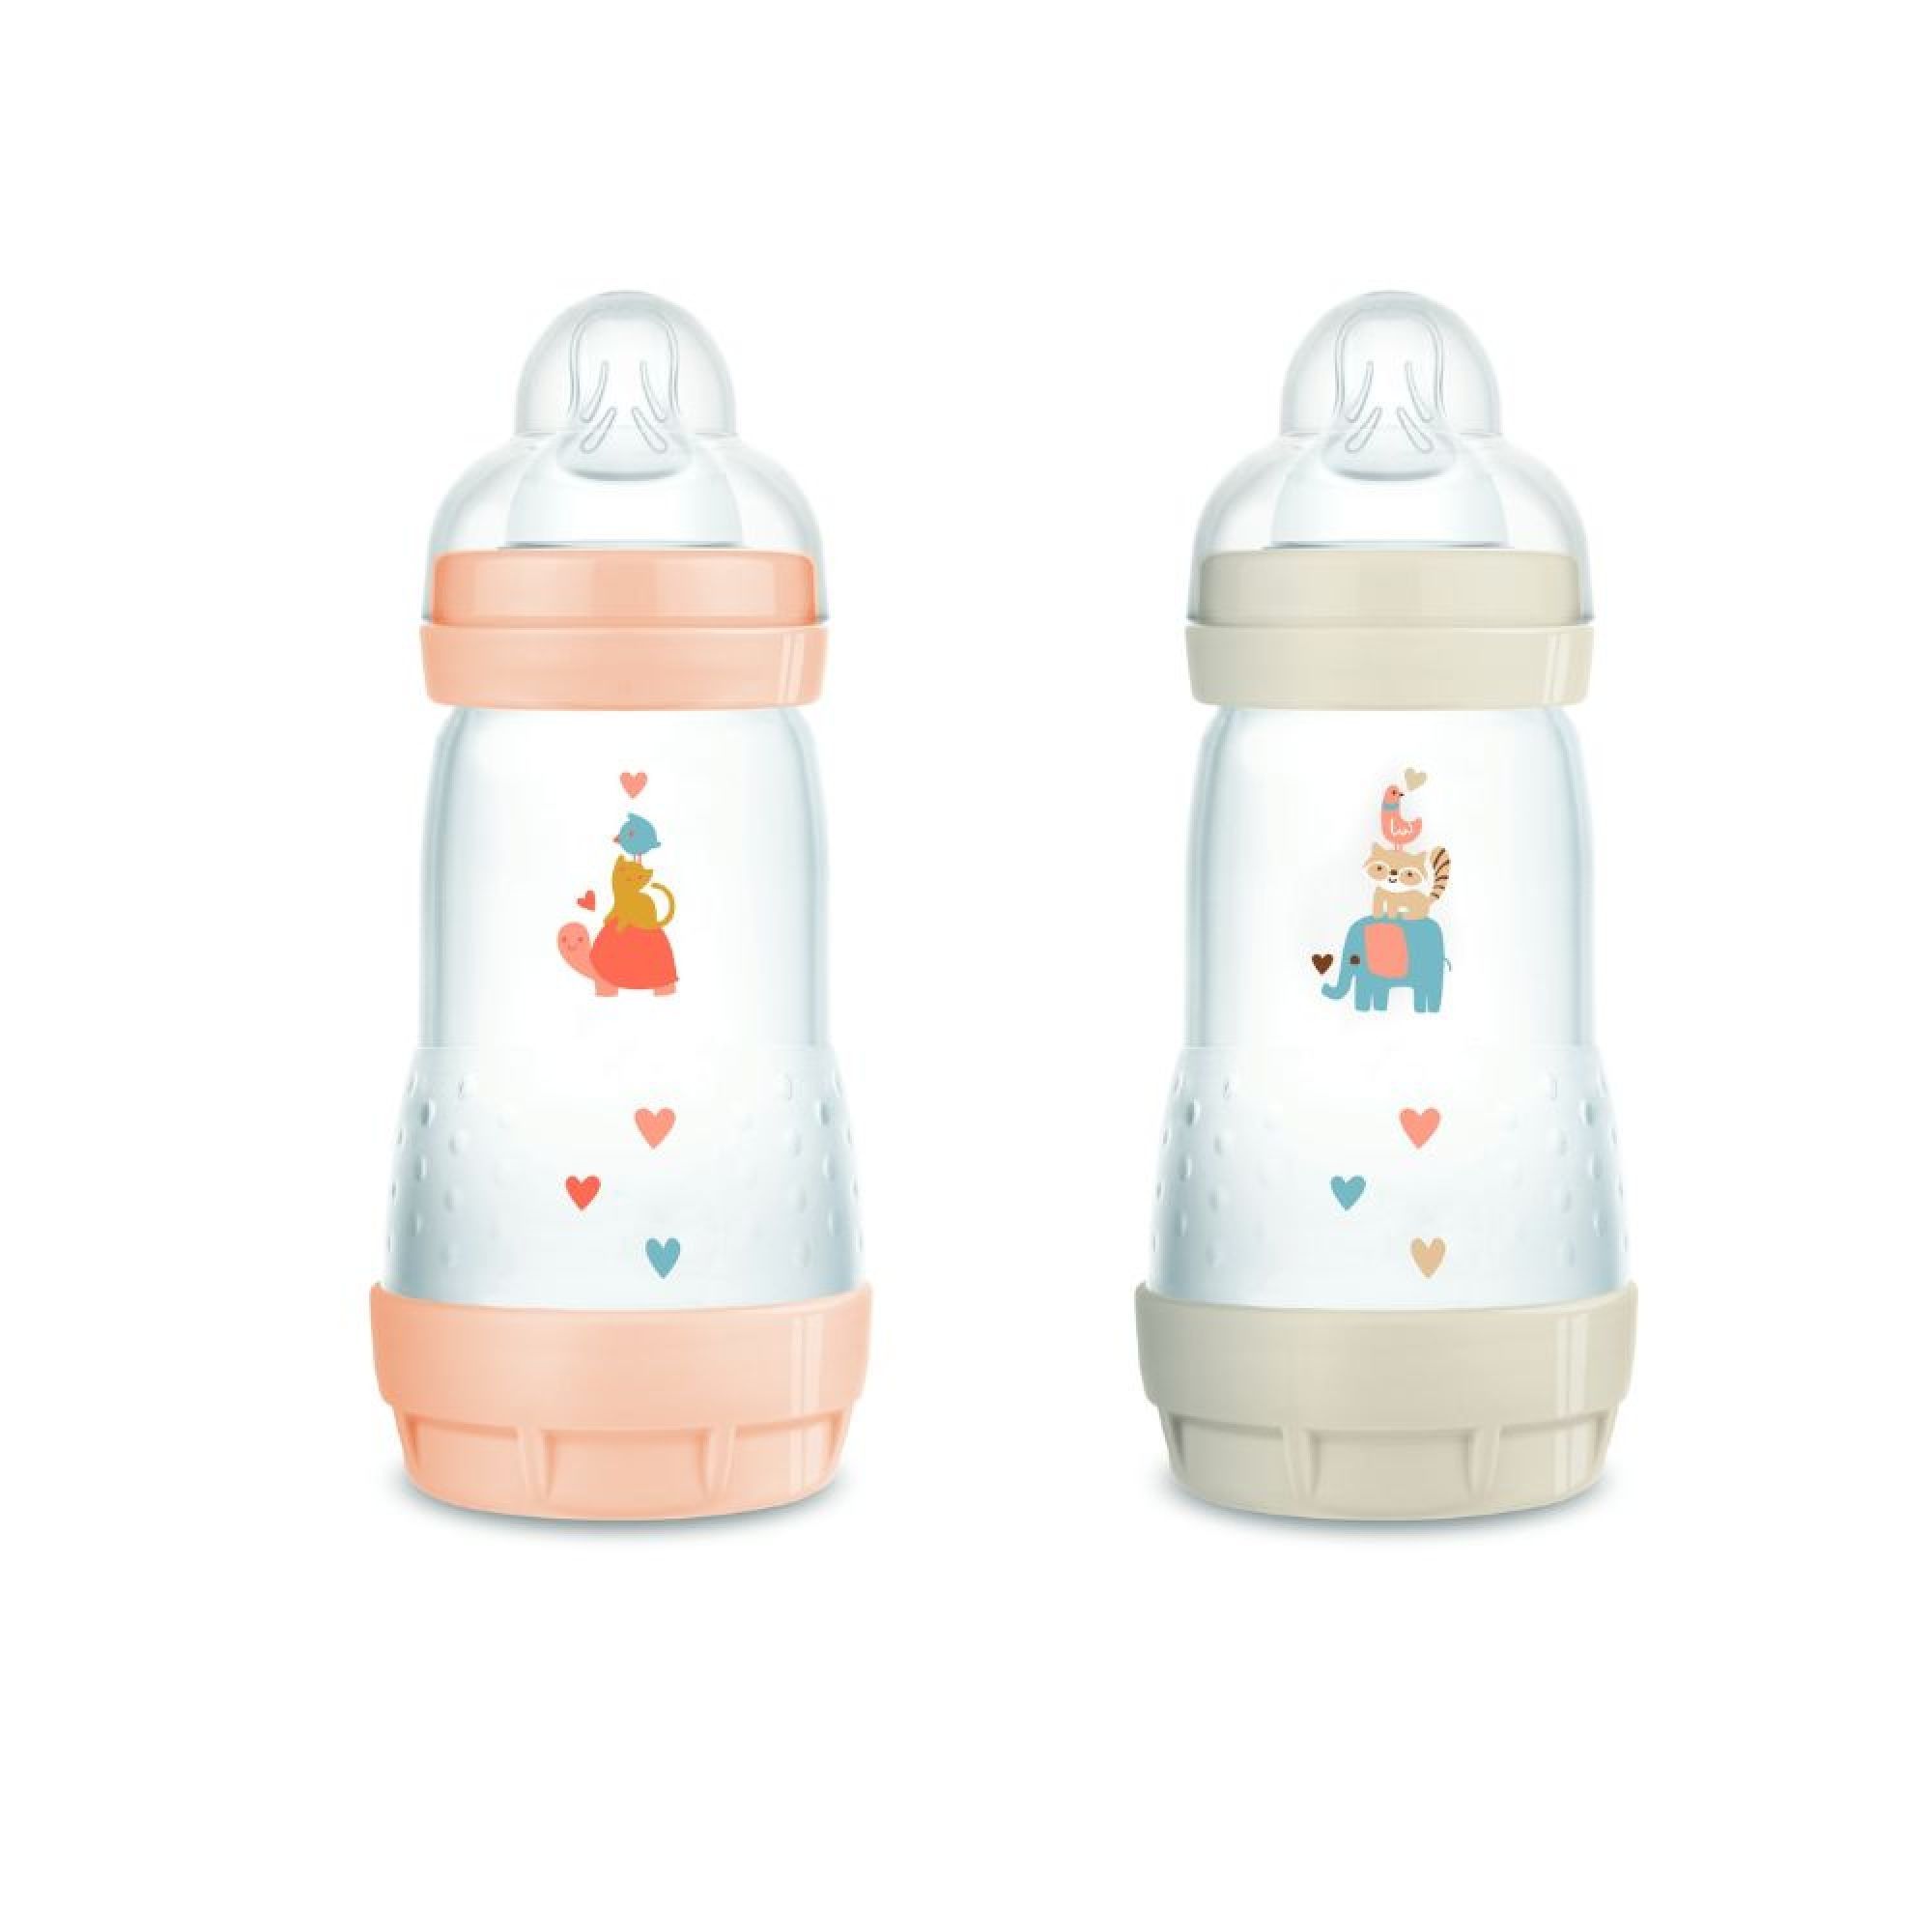 MAM : Vente en ligne de sucettes et biberons pour bébé